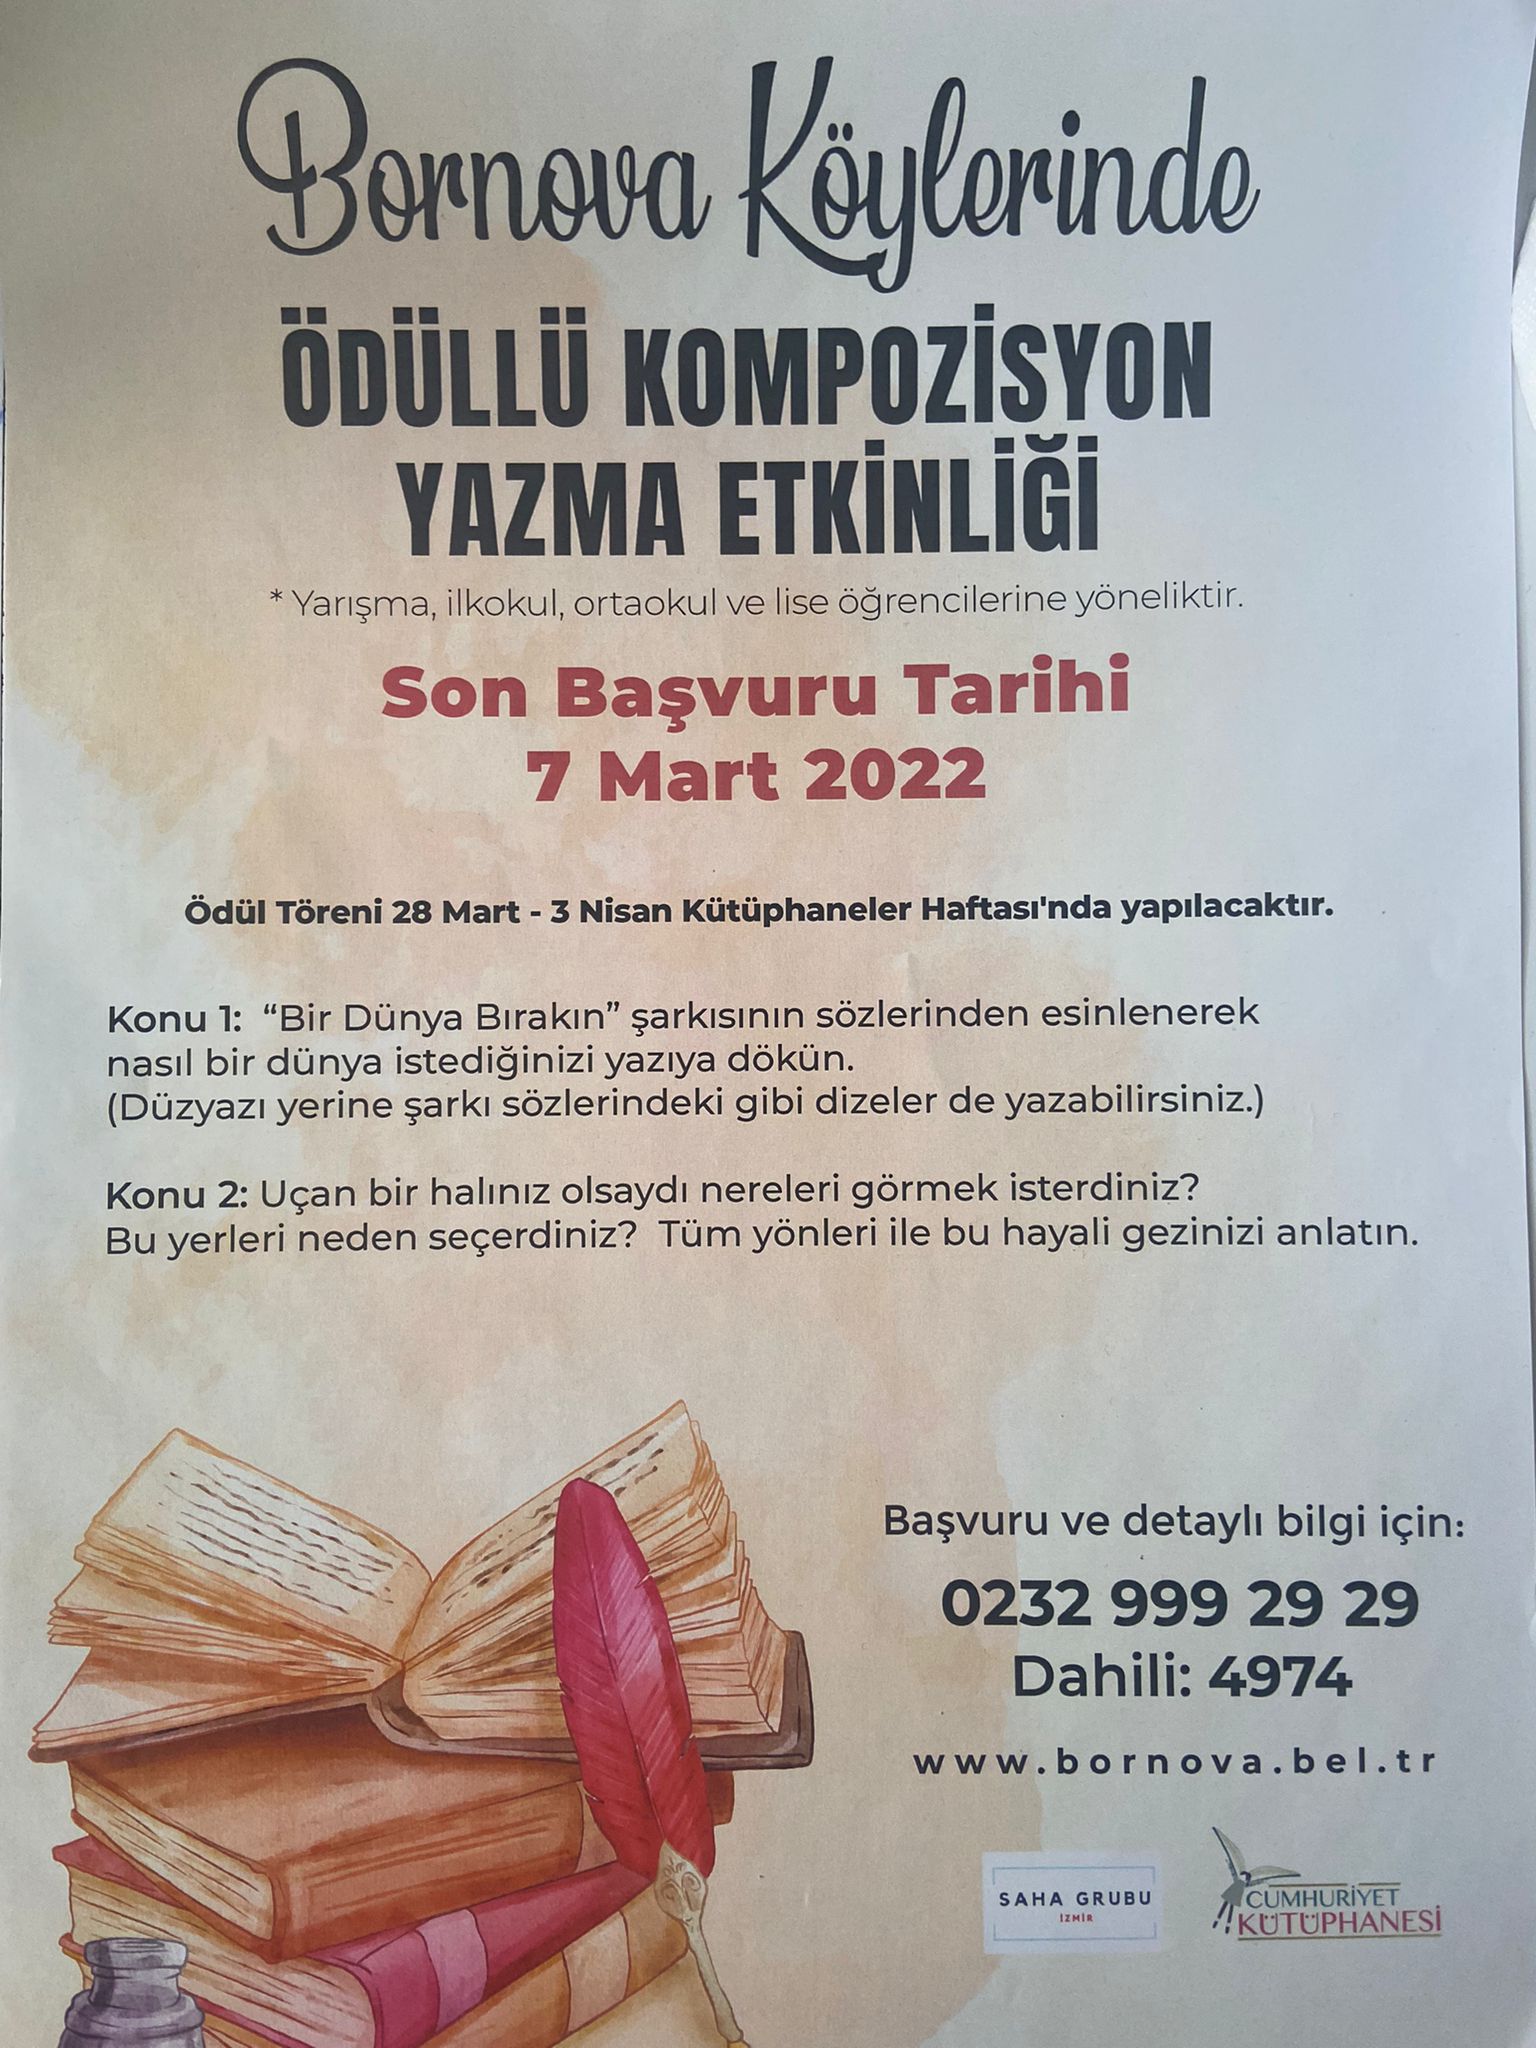 ‘Bornova Köylerinde Ödüllü Kompozisyon Yazma’ etkinliği